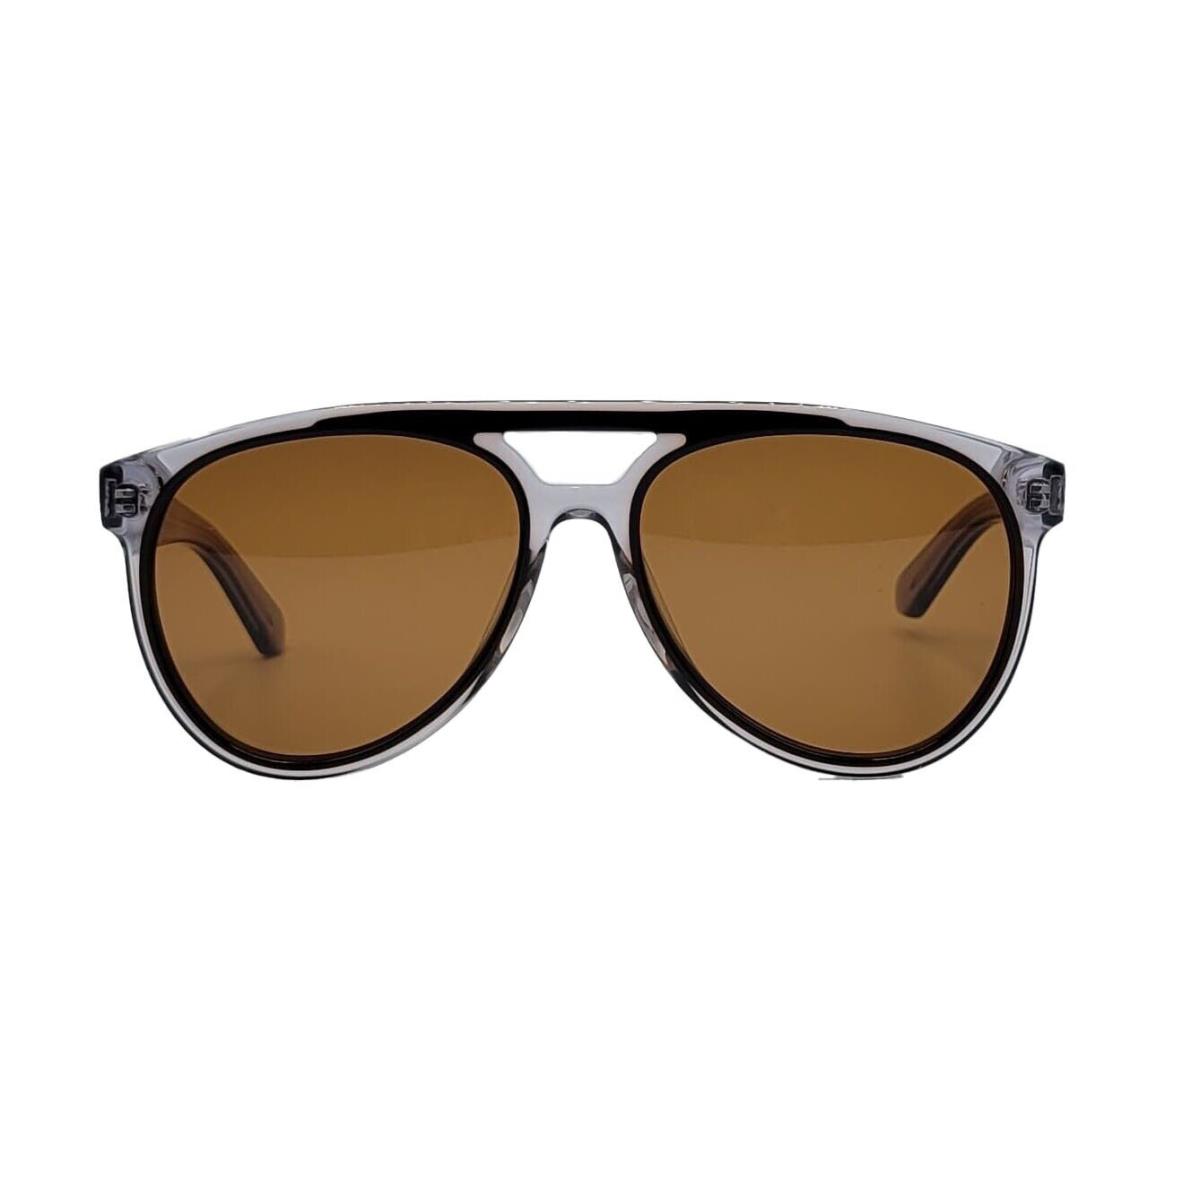 Ferragamo Sun - SF945S 013 57/16/150 - Black/grey - Women Sunglasses